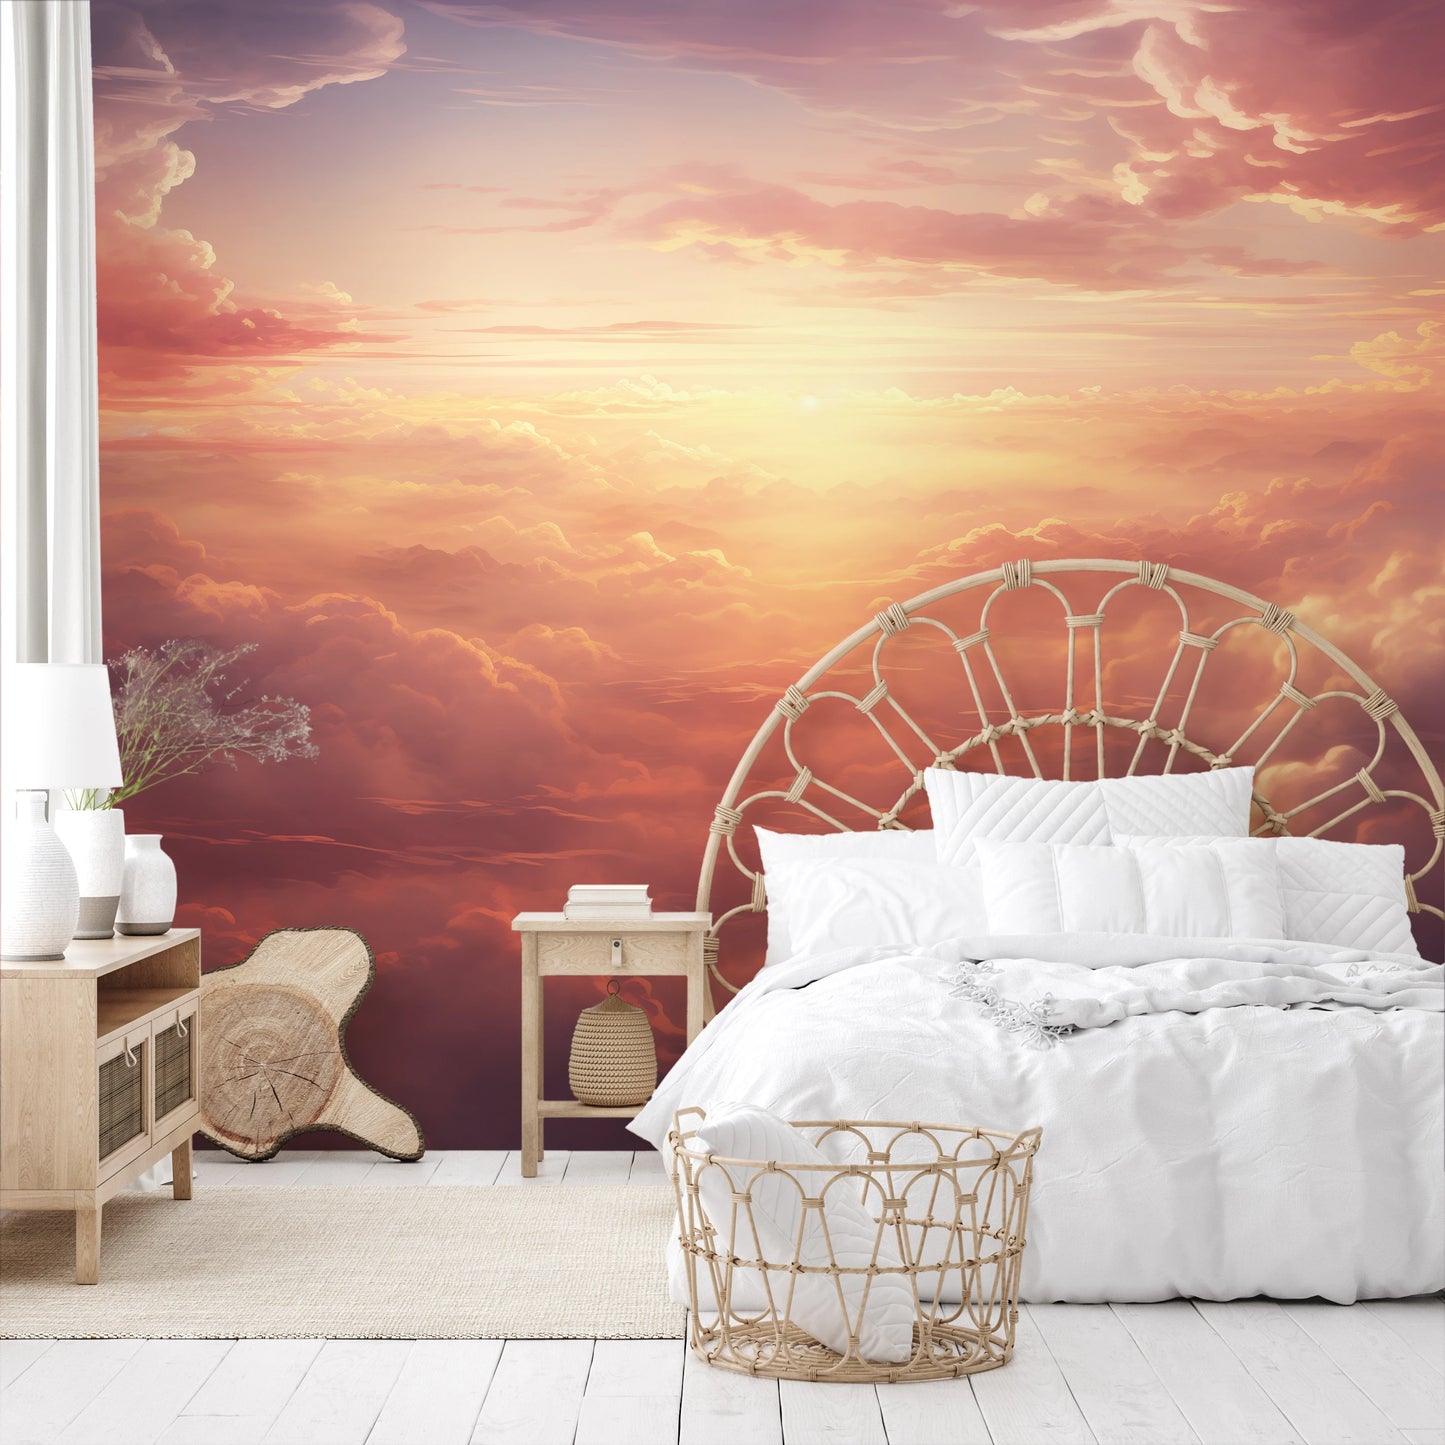 Fototapeta malowana o nazwie Sunset Symphony pokazana w aranżacji wnętrza.